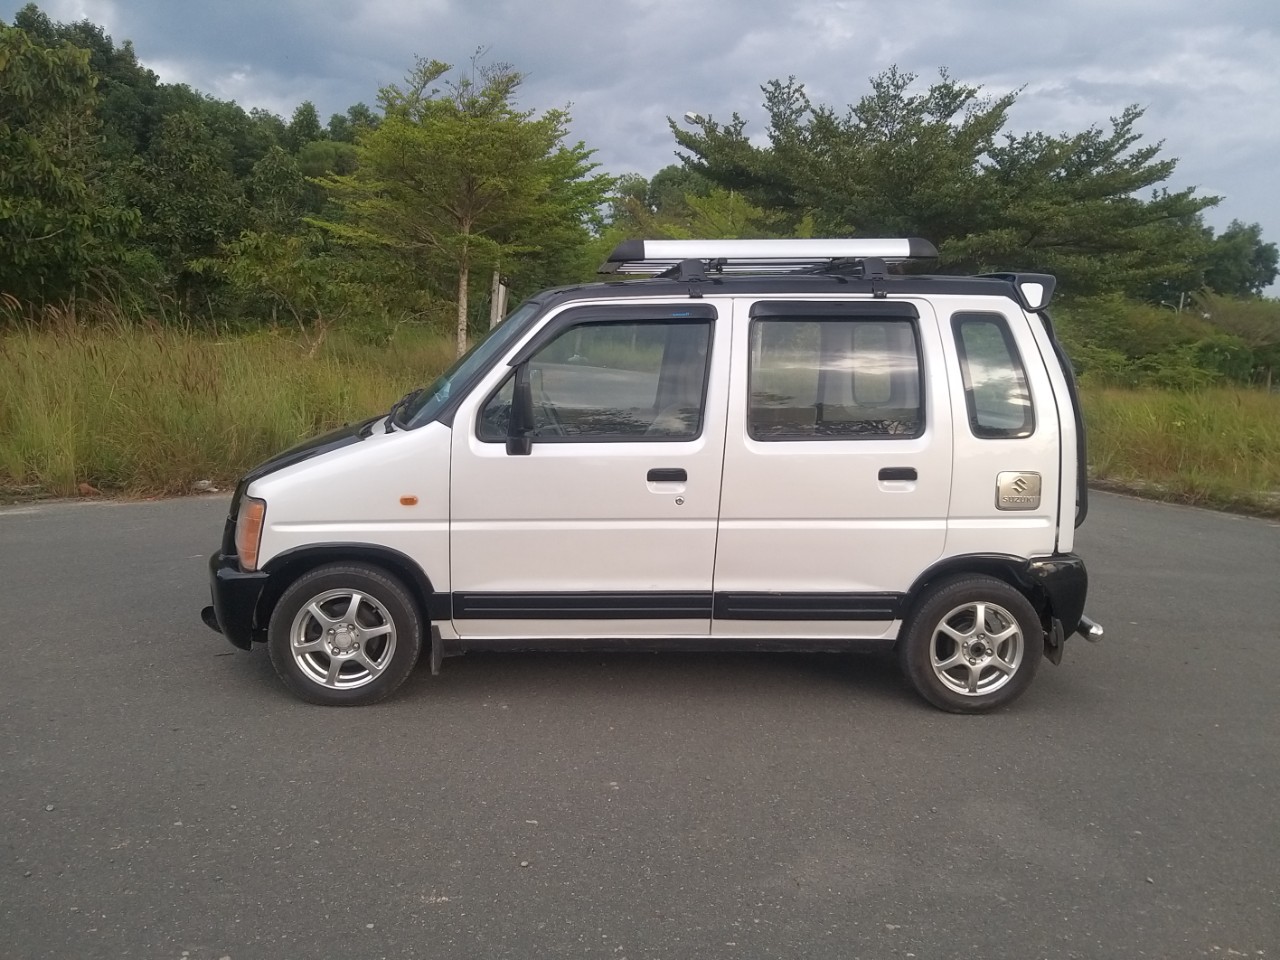 Giá Nóc Suzuki Wagon R+ 2001-2007 Và Các Dòng Xe Tương Ứng Loại Ngang Giá 1  Cặp - Phụ Tùng Mô Tô Plk - Phutungmotopkl.Com